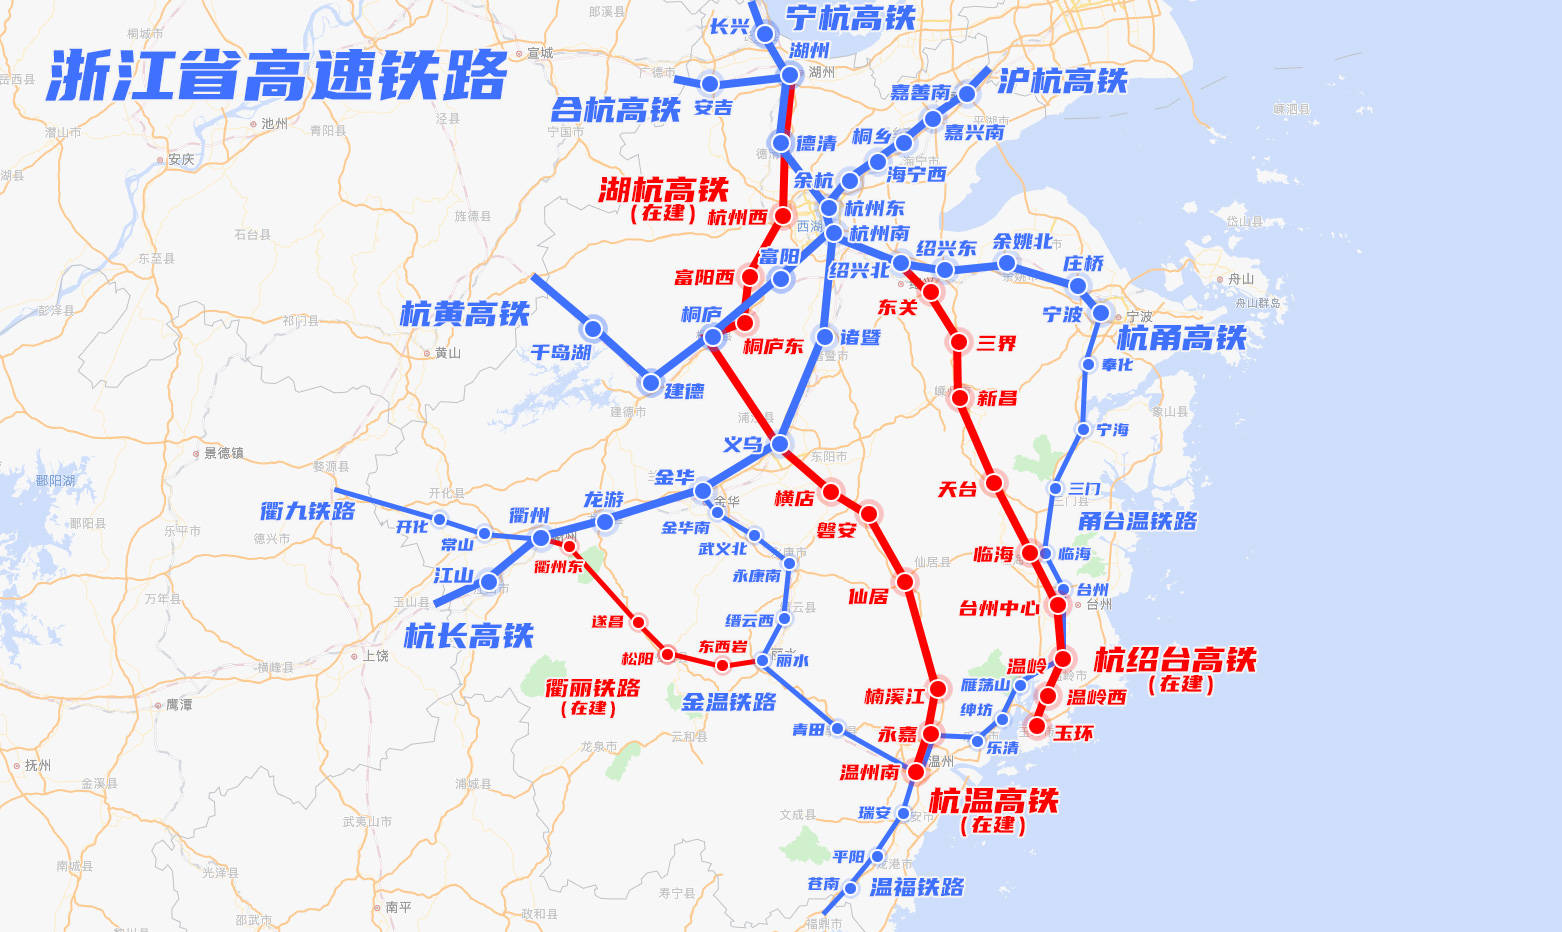 浙江省高铁快铁城际铁路线网运行建设规划图